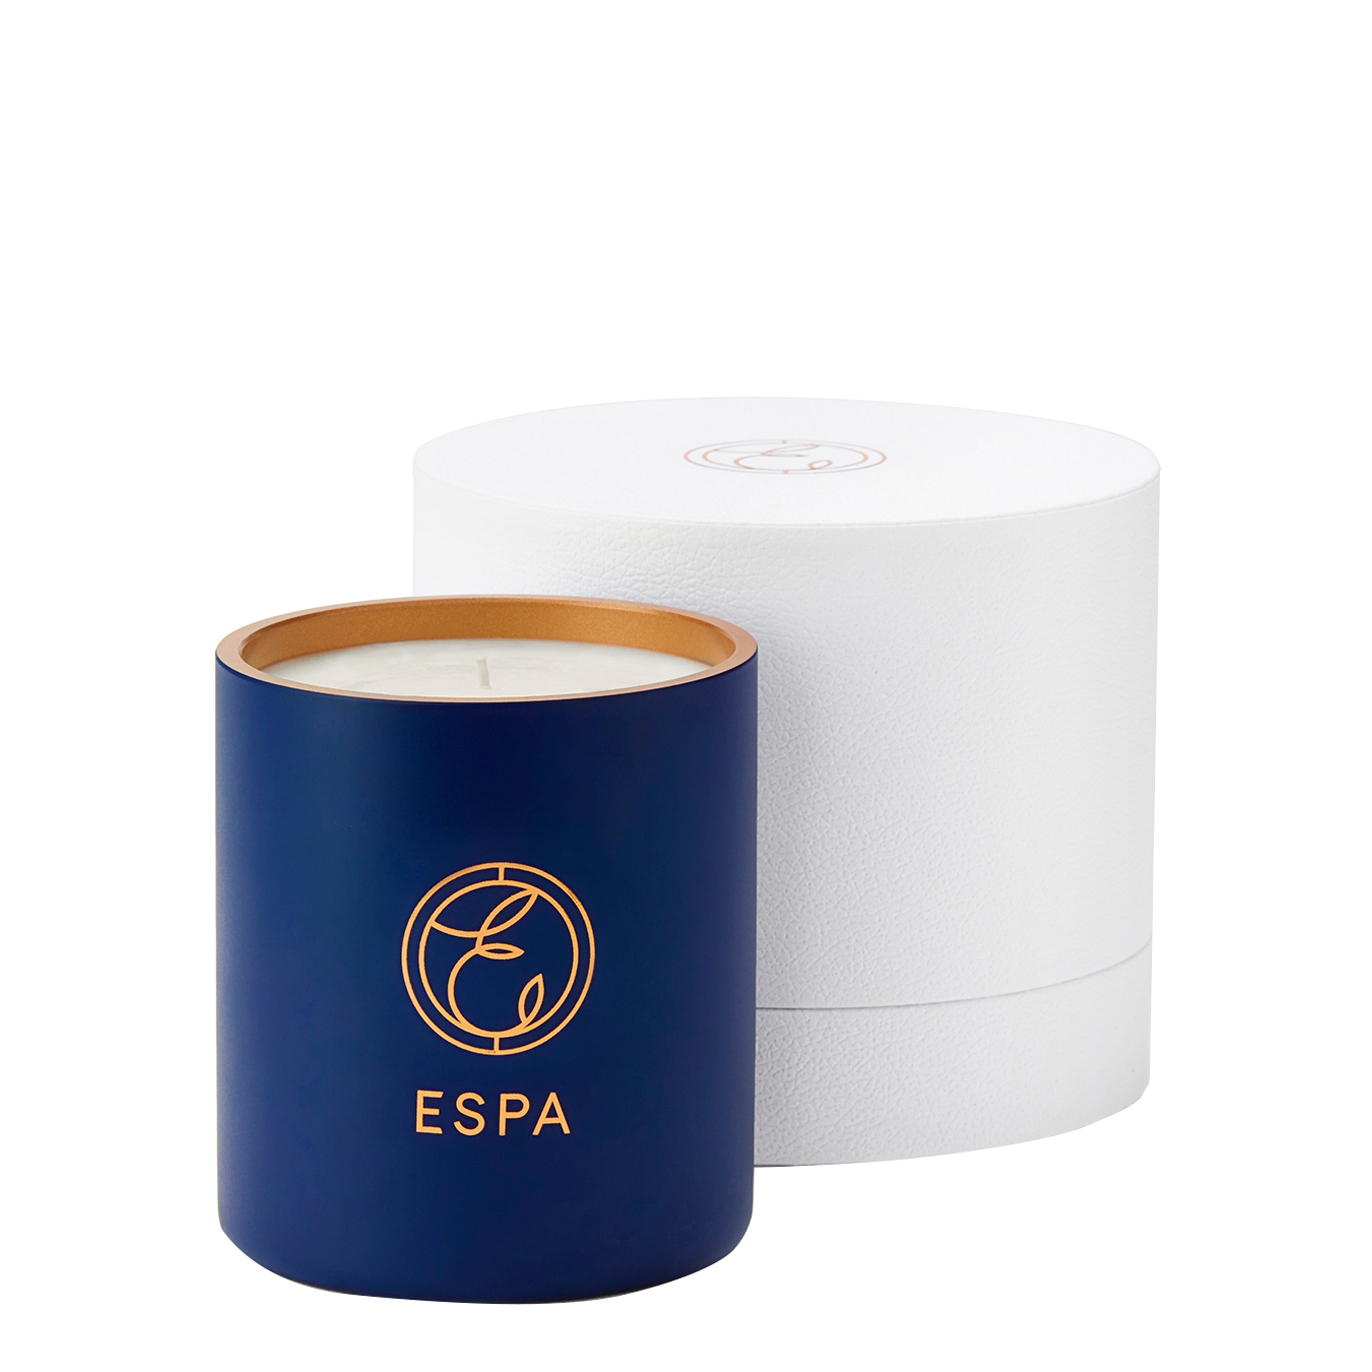 Espa Winter Spice Classic Candle